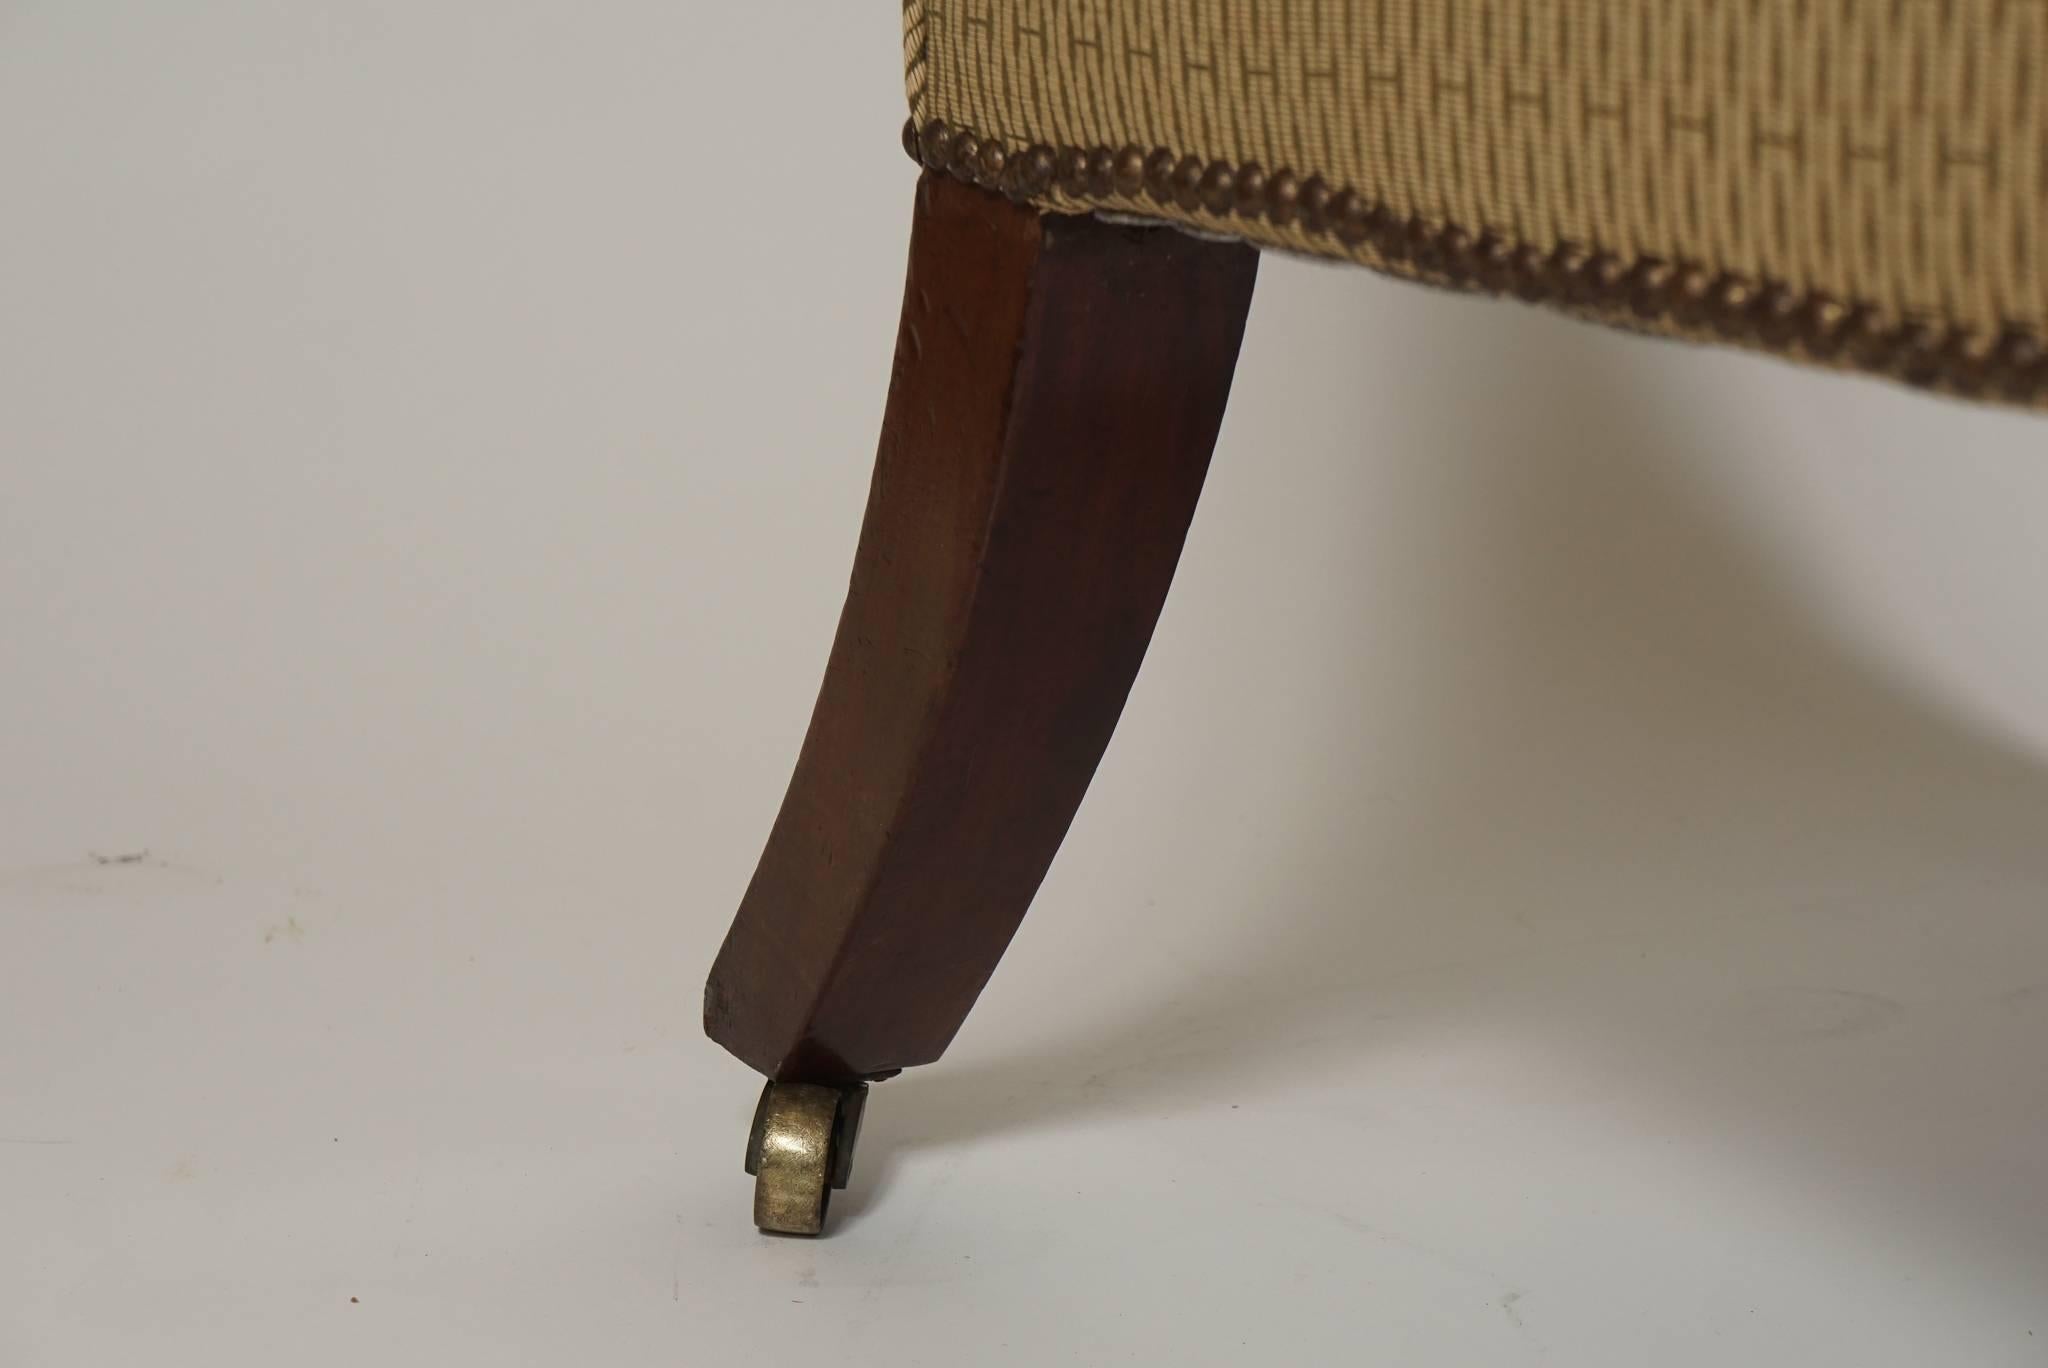 Une bergère ou un fauteuil inhabituel de la période Régence anglaise, avec des coins de dossier concaves et des motifs d'acanthe et de panneaux sculptés en acajou sur les extrémités des bras, les blocs d'angle et le rail de l'assise, avec des pieds